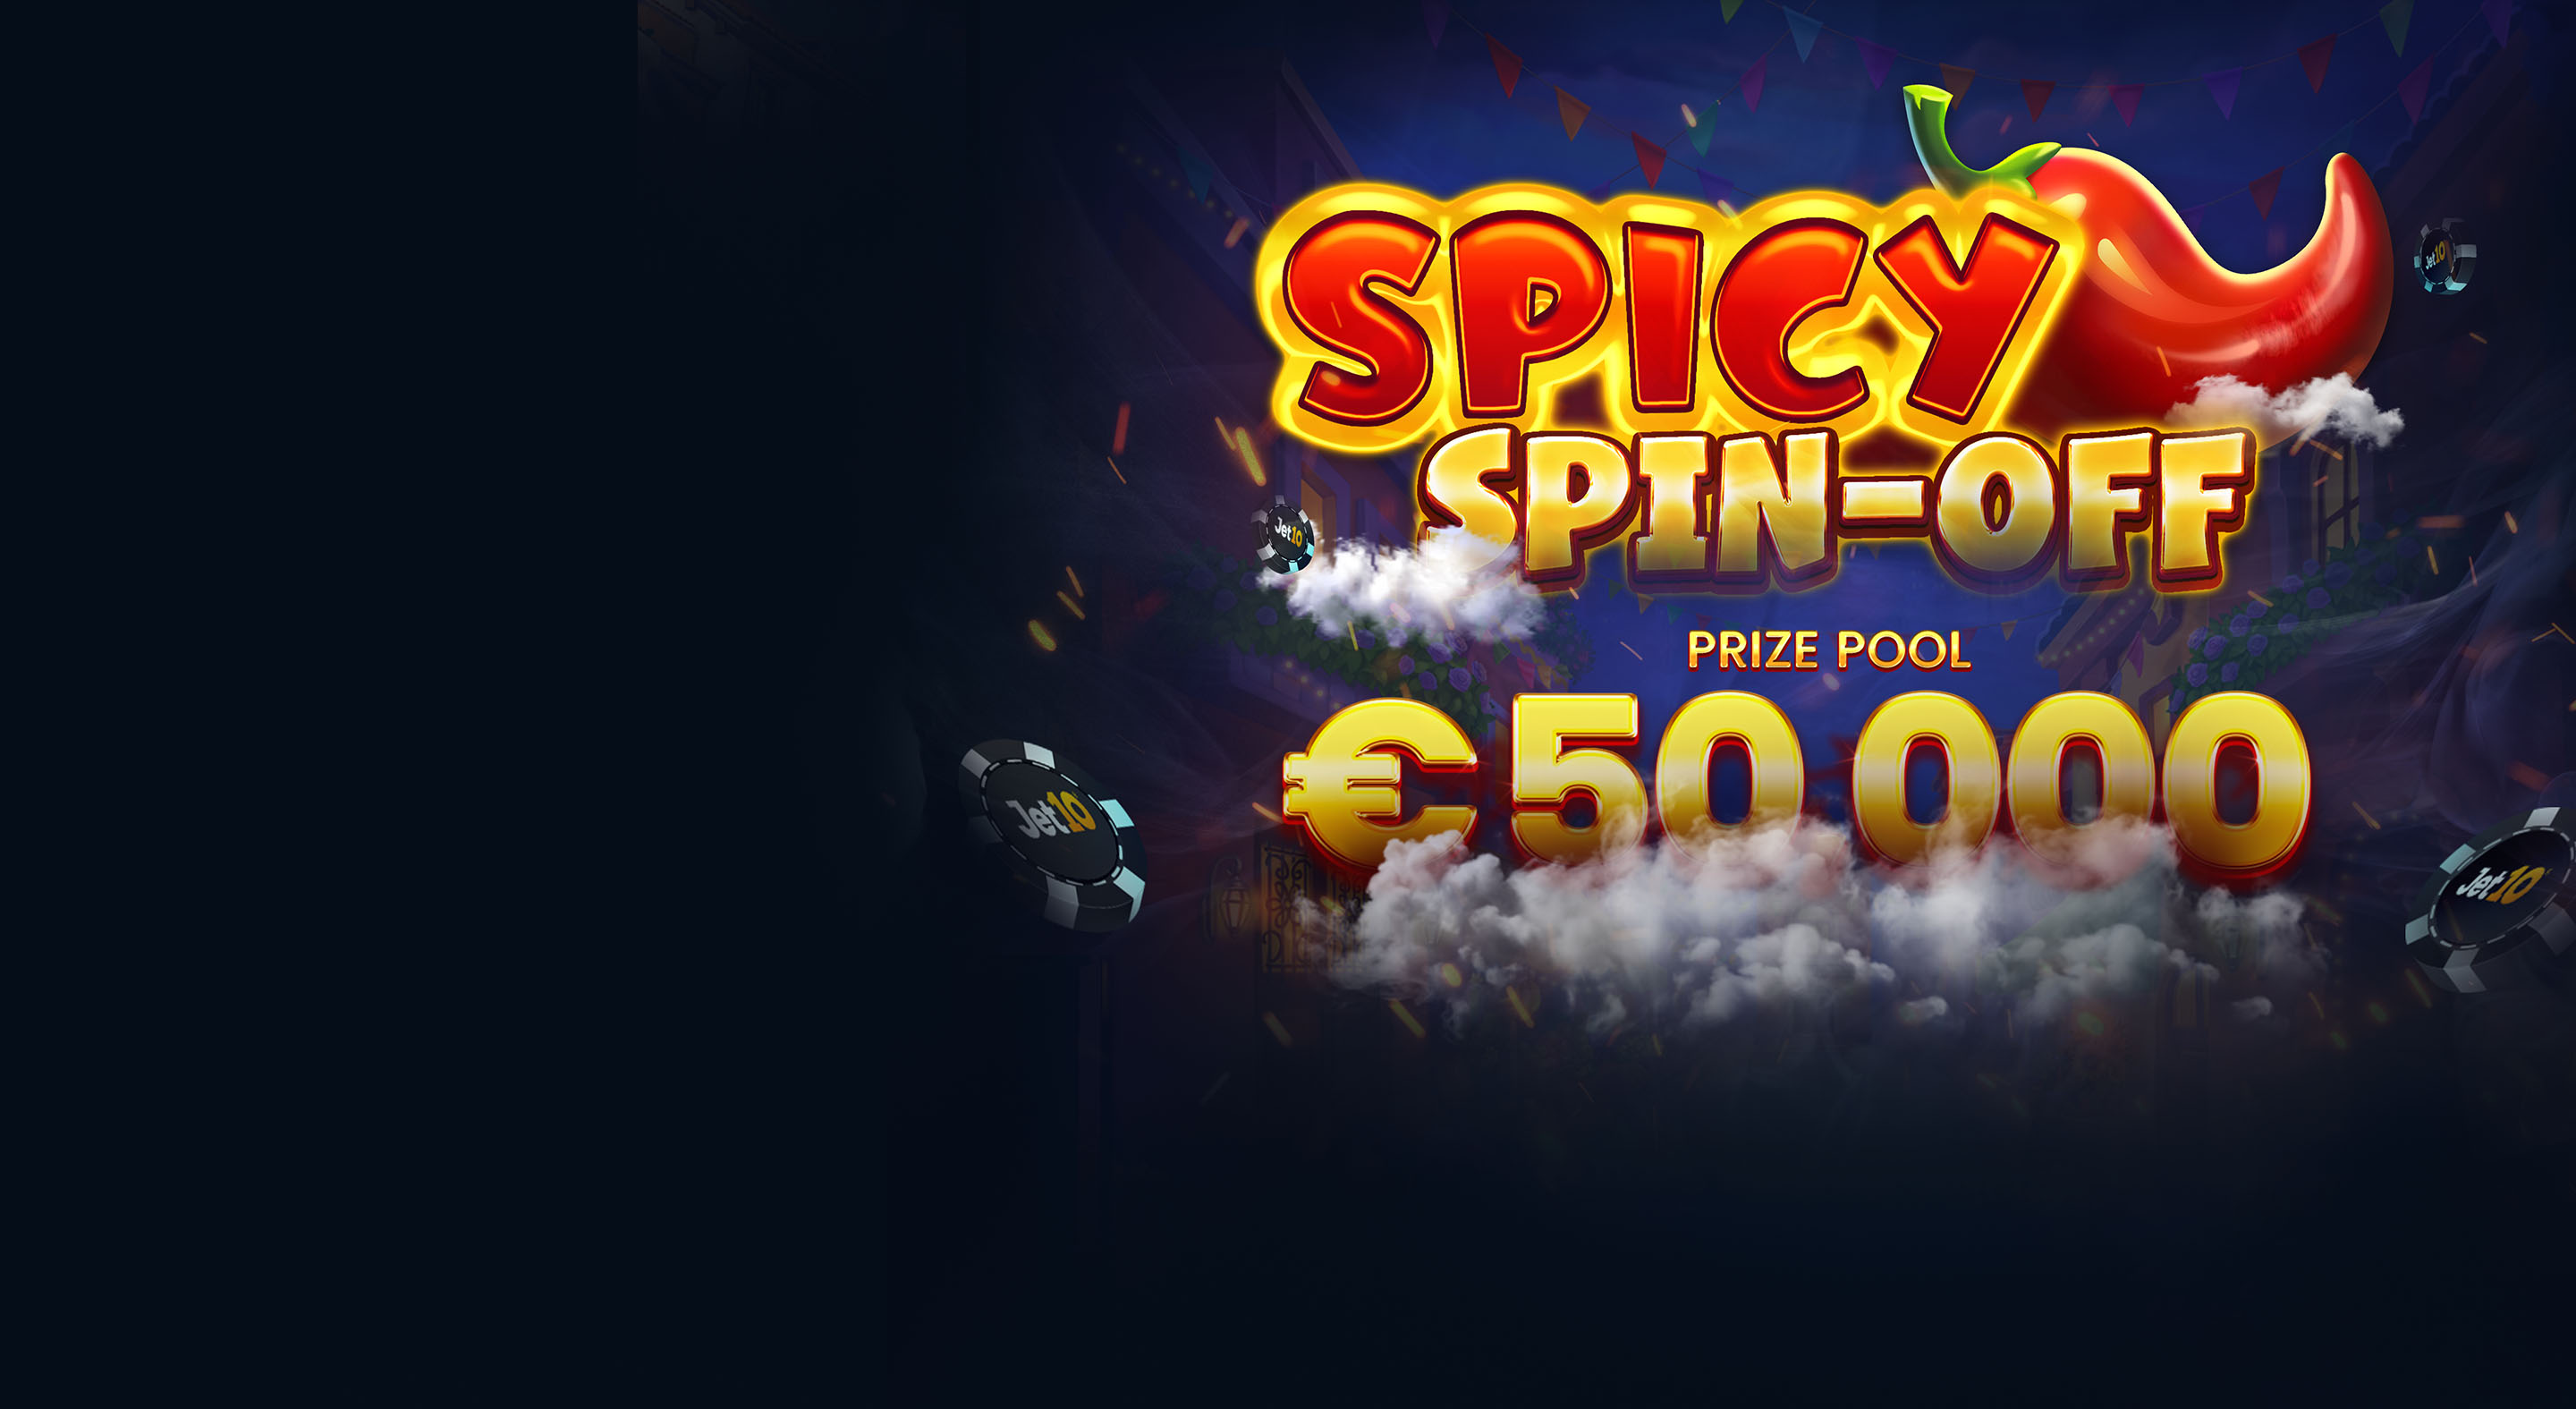 Spicy Spin-off<br>turnauksen aika!